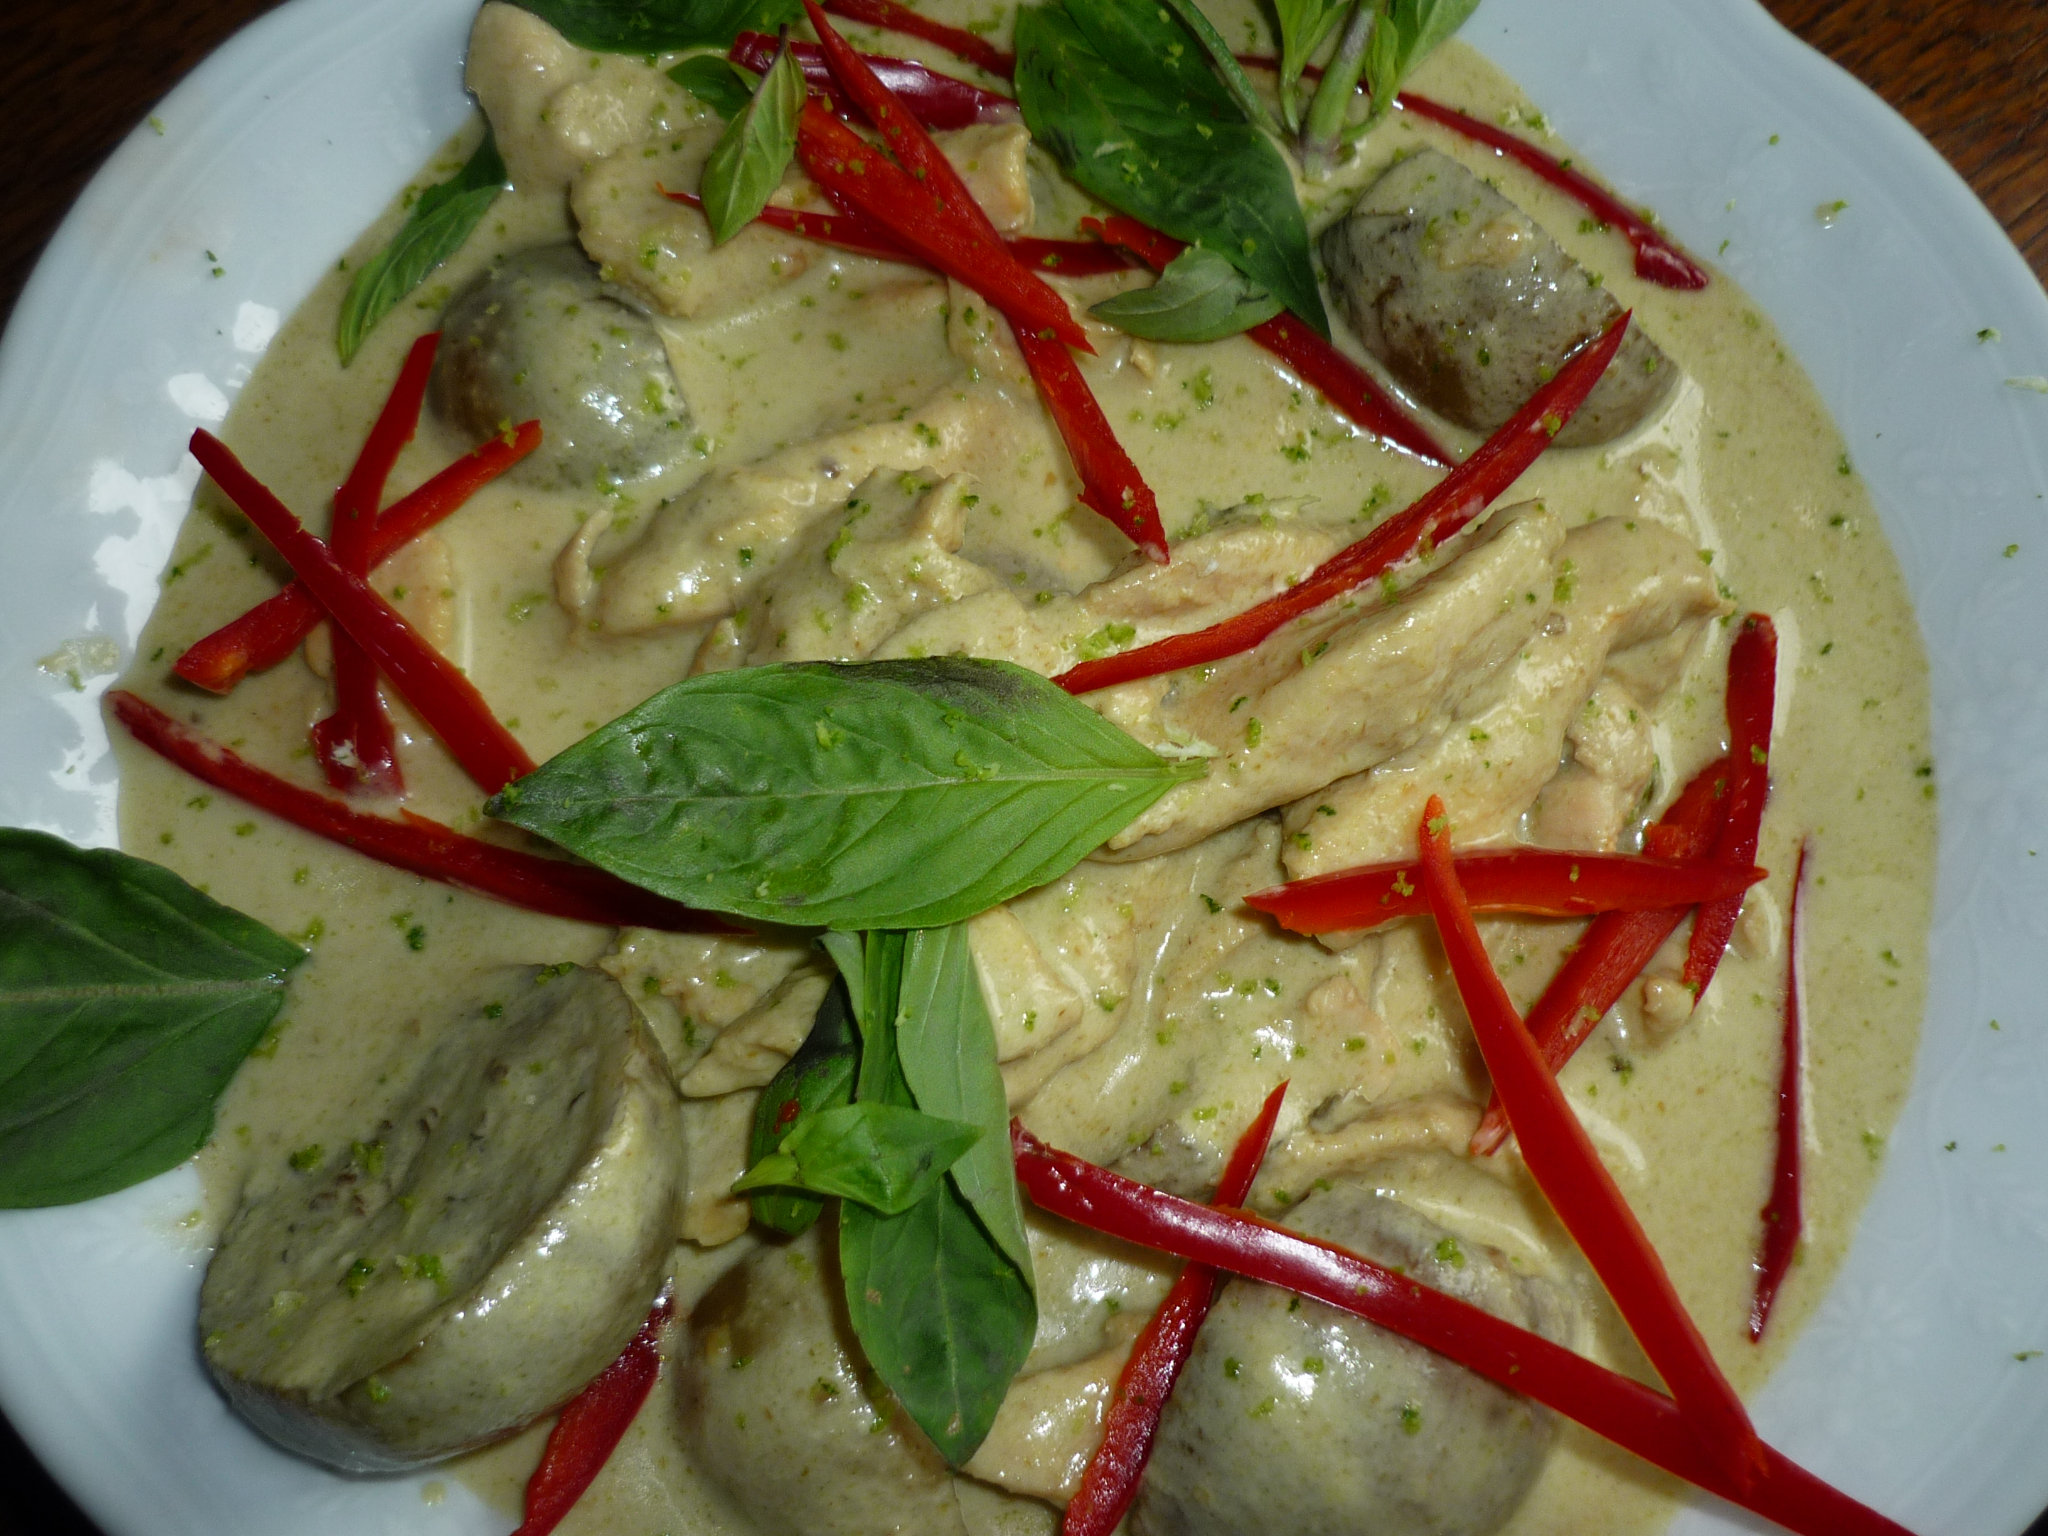 Curry vert thaïlandais au lait de coco : la recette